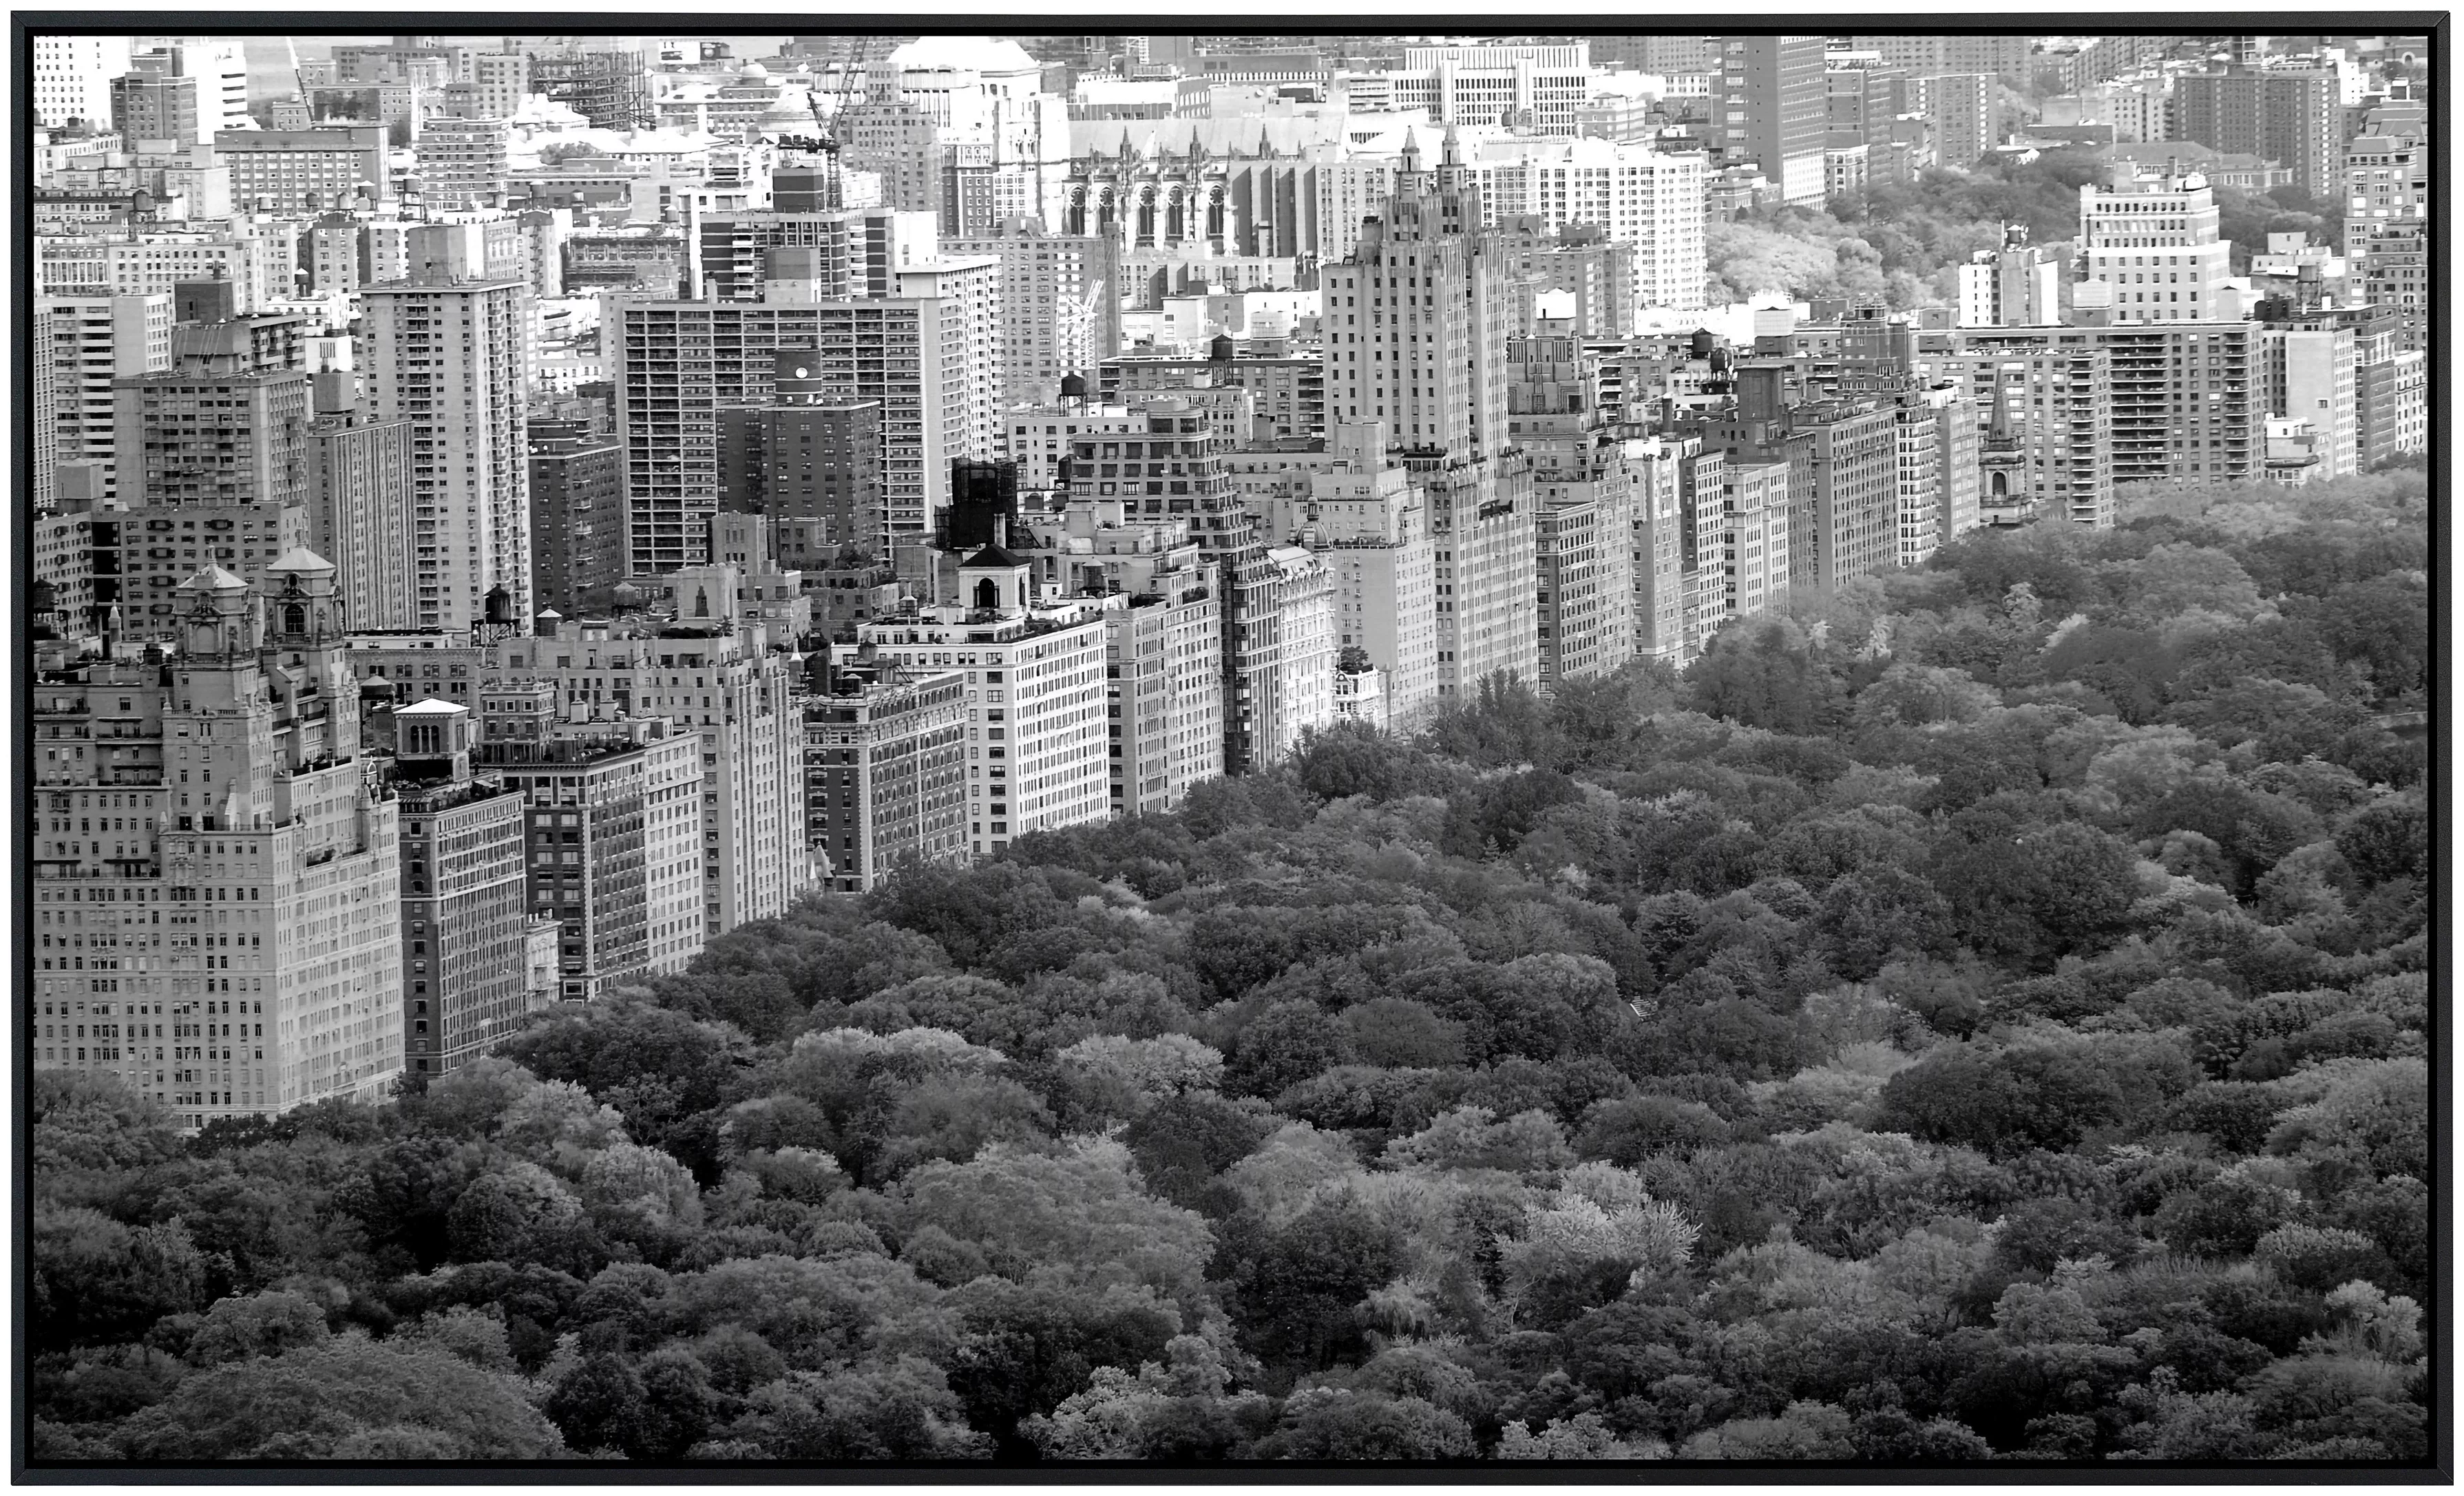 Papermoon Infrarotheizung »Central Park Schwarz & Weiß«, sehr angenehme Str günstig online kaufen